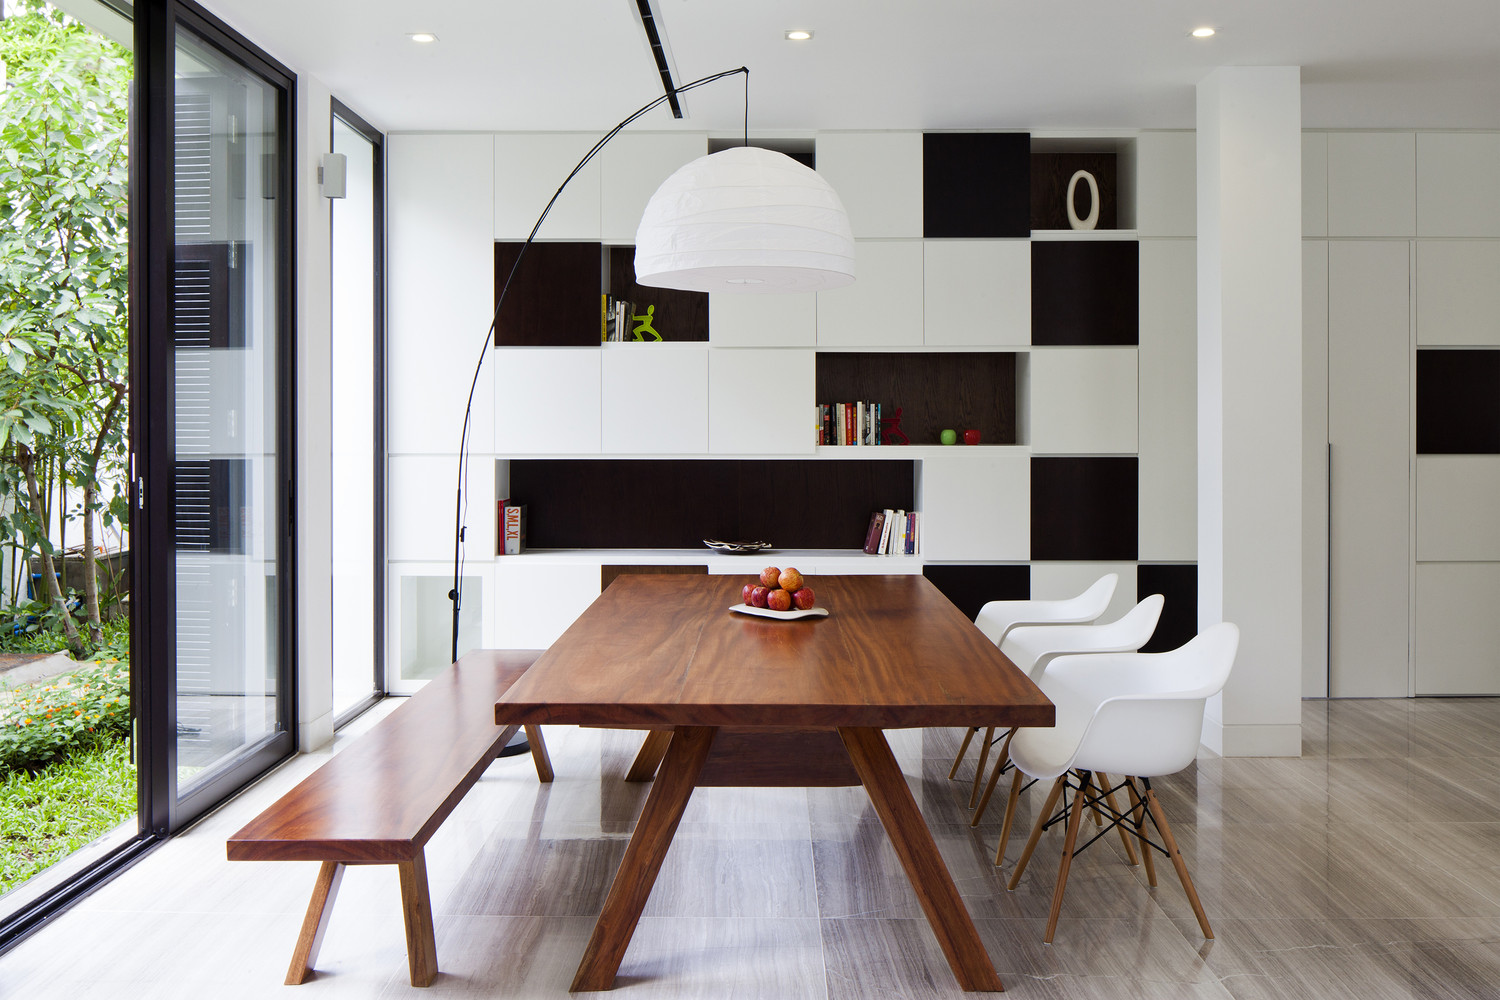 Hệ thống kệ âm tường tại khu vực phòng ăn với những ô màu xen kẽ trắng - đen cho cảm giác vừa sang trọng vừa hiện đại.